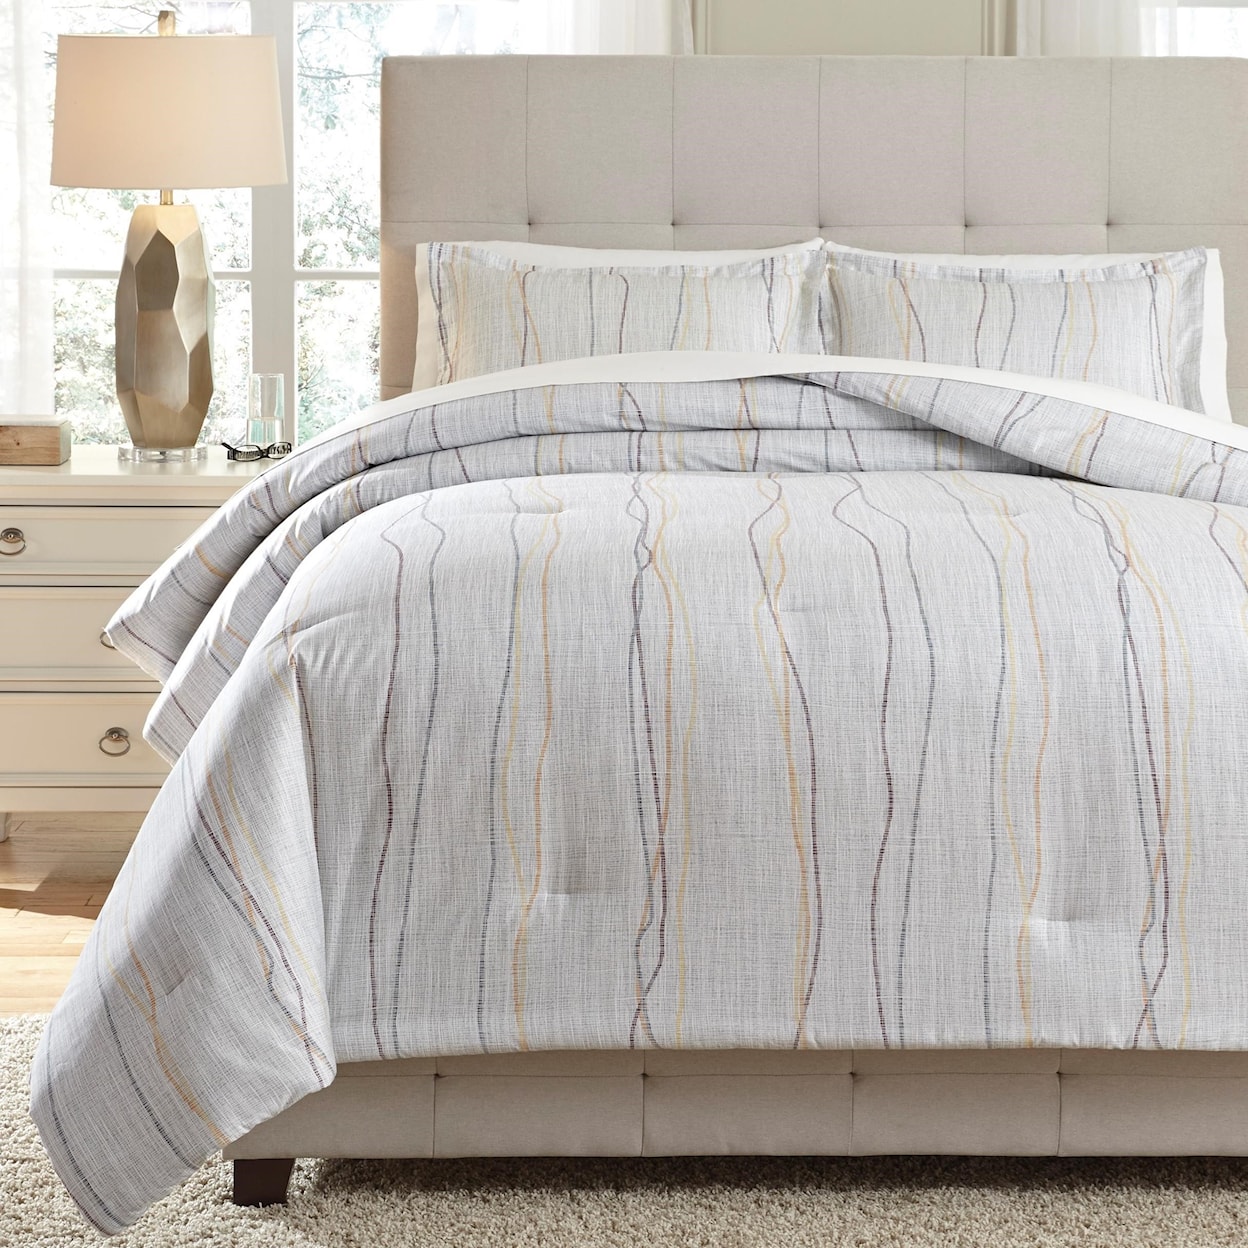 Ashley Furniture Signature Design Bedding Sets King Bevan Multi Comforter Set